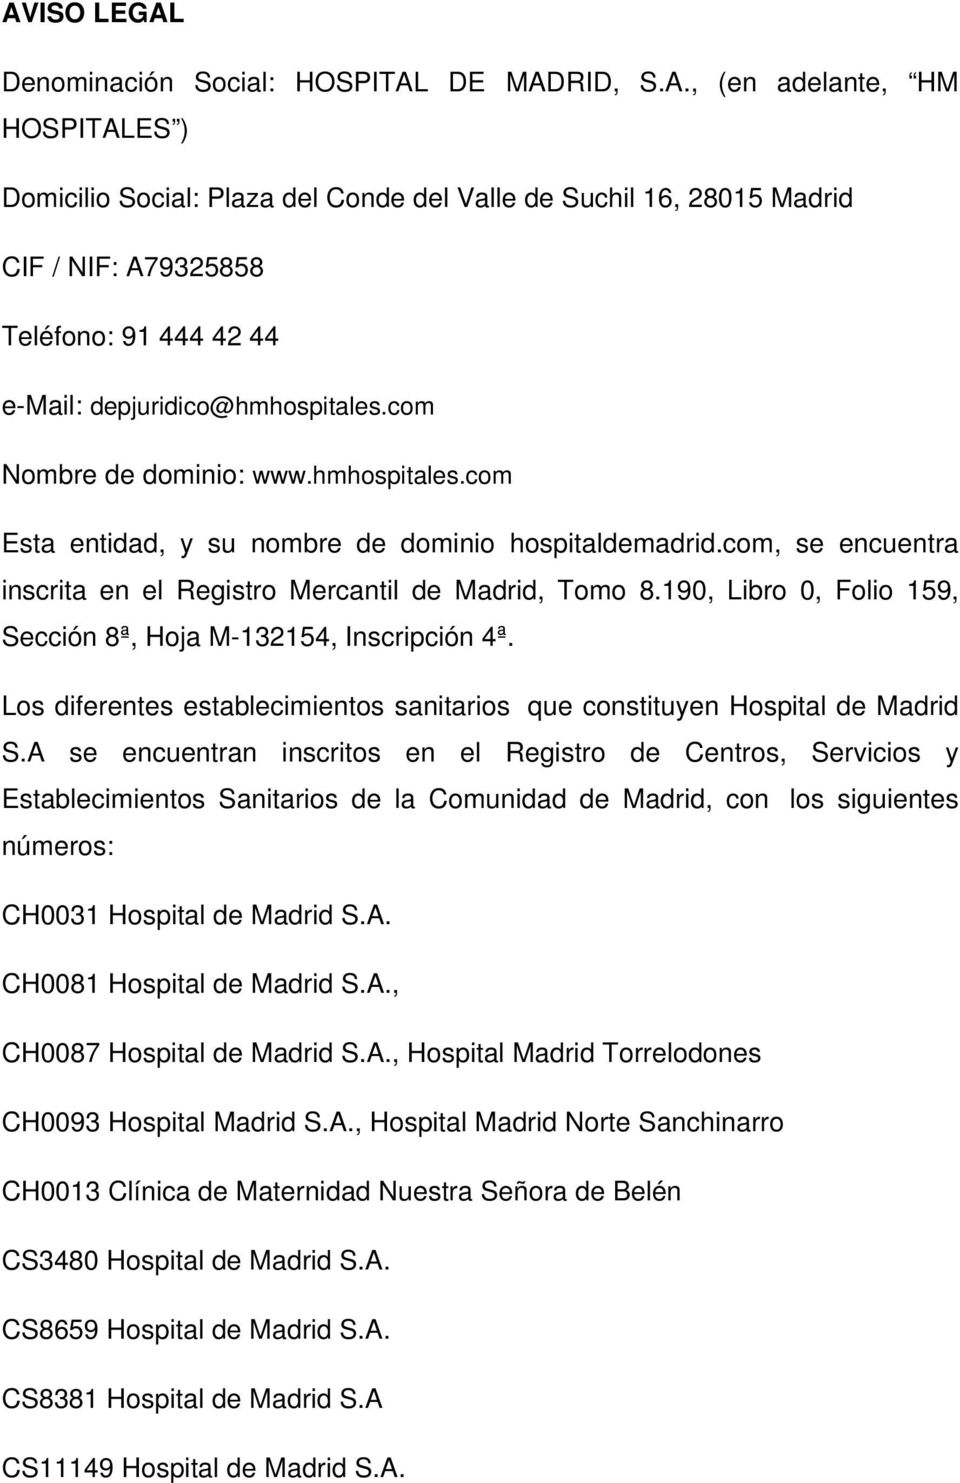 190, Libro 0, Folio 159, Sección 8ª, Hoja M-132154, Inscripción 4ª. Los diferentes establecimientos sanitarios que constituyen Hospital de Madrid S.